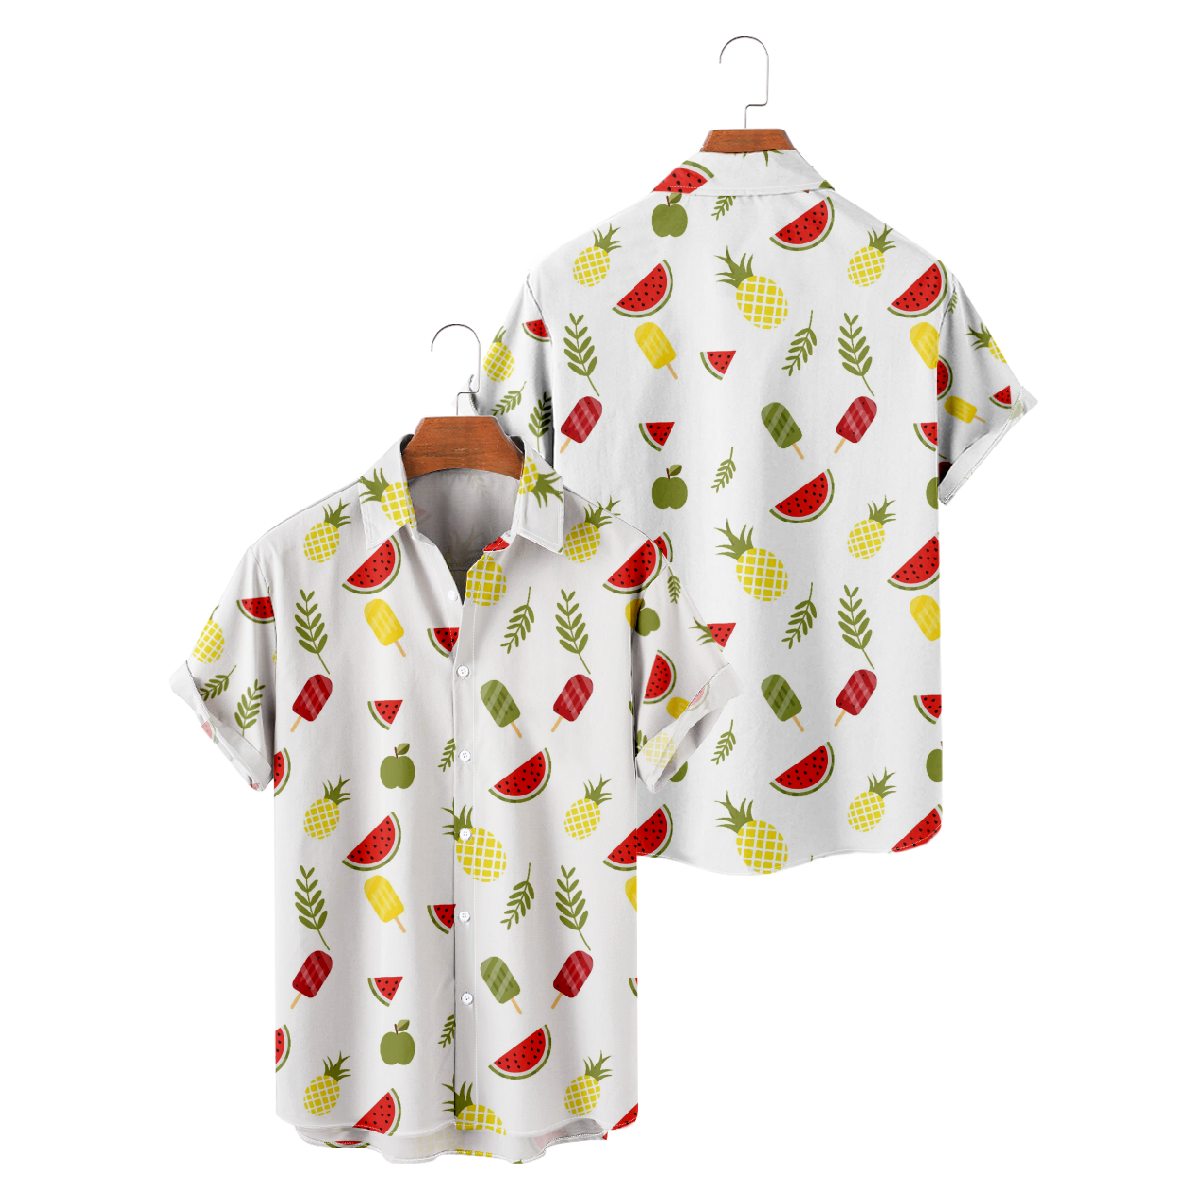 Watermelon Hawaiian Shirt Men's Short Sleeve Shirt Button Up Straight Collar Summer Tops